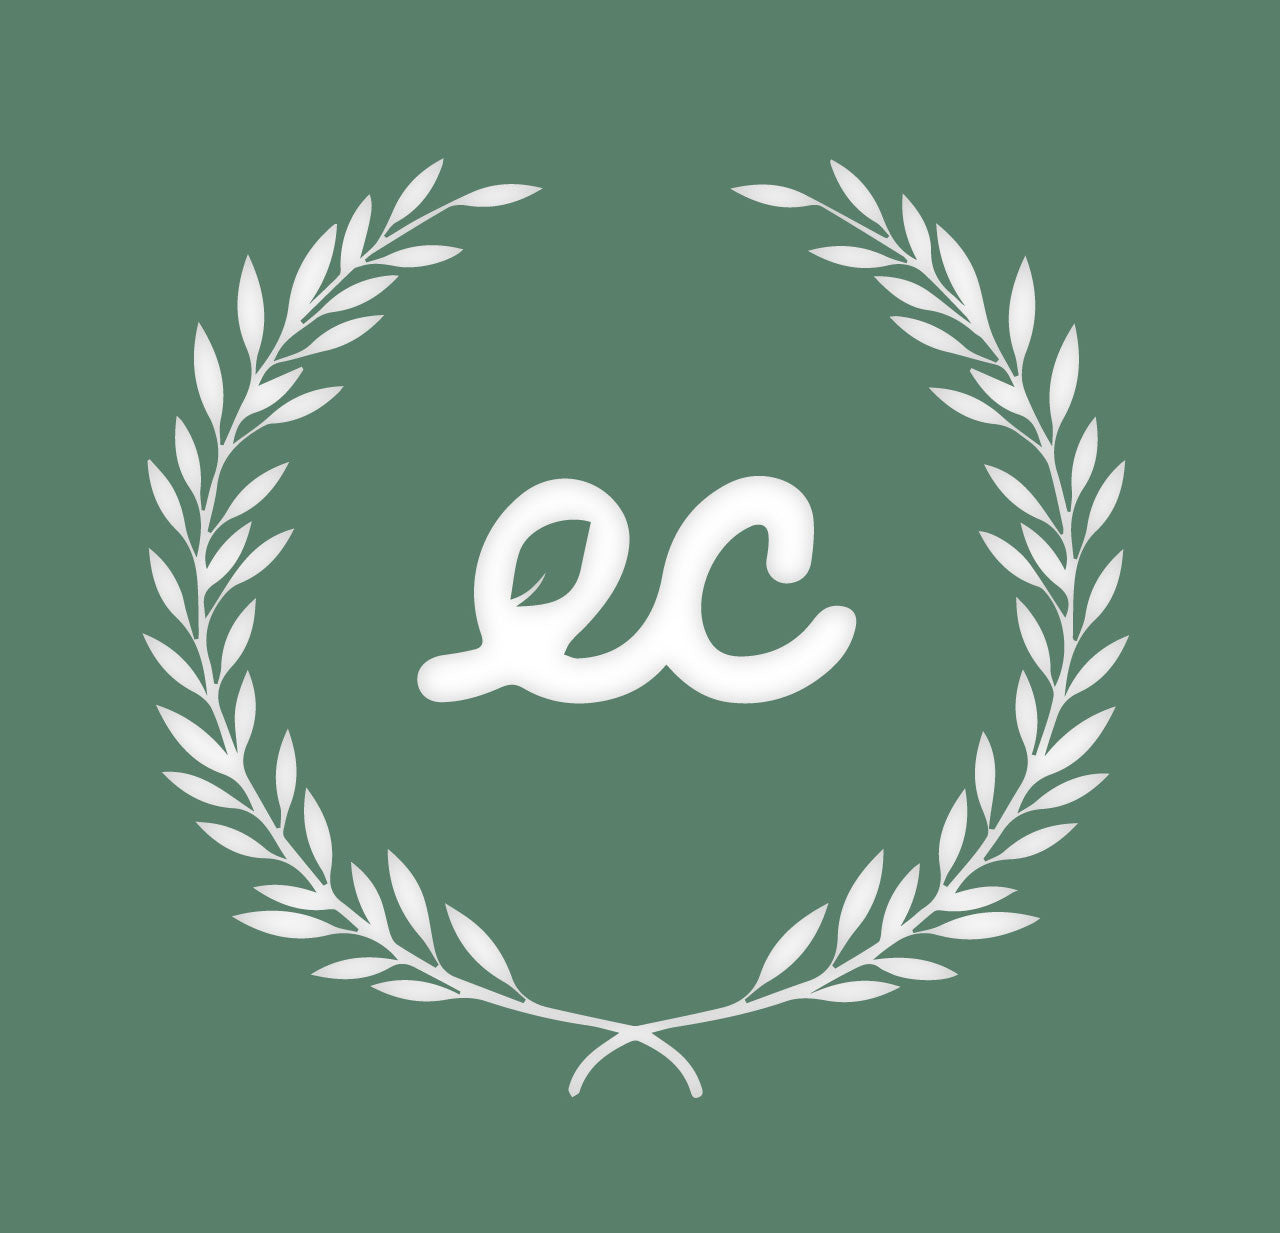 ECA Organization Membership